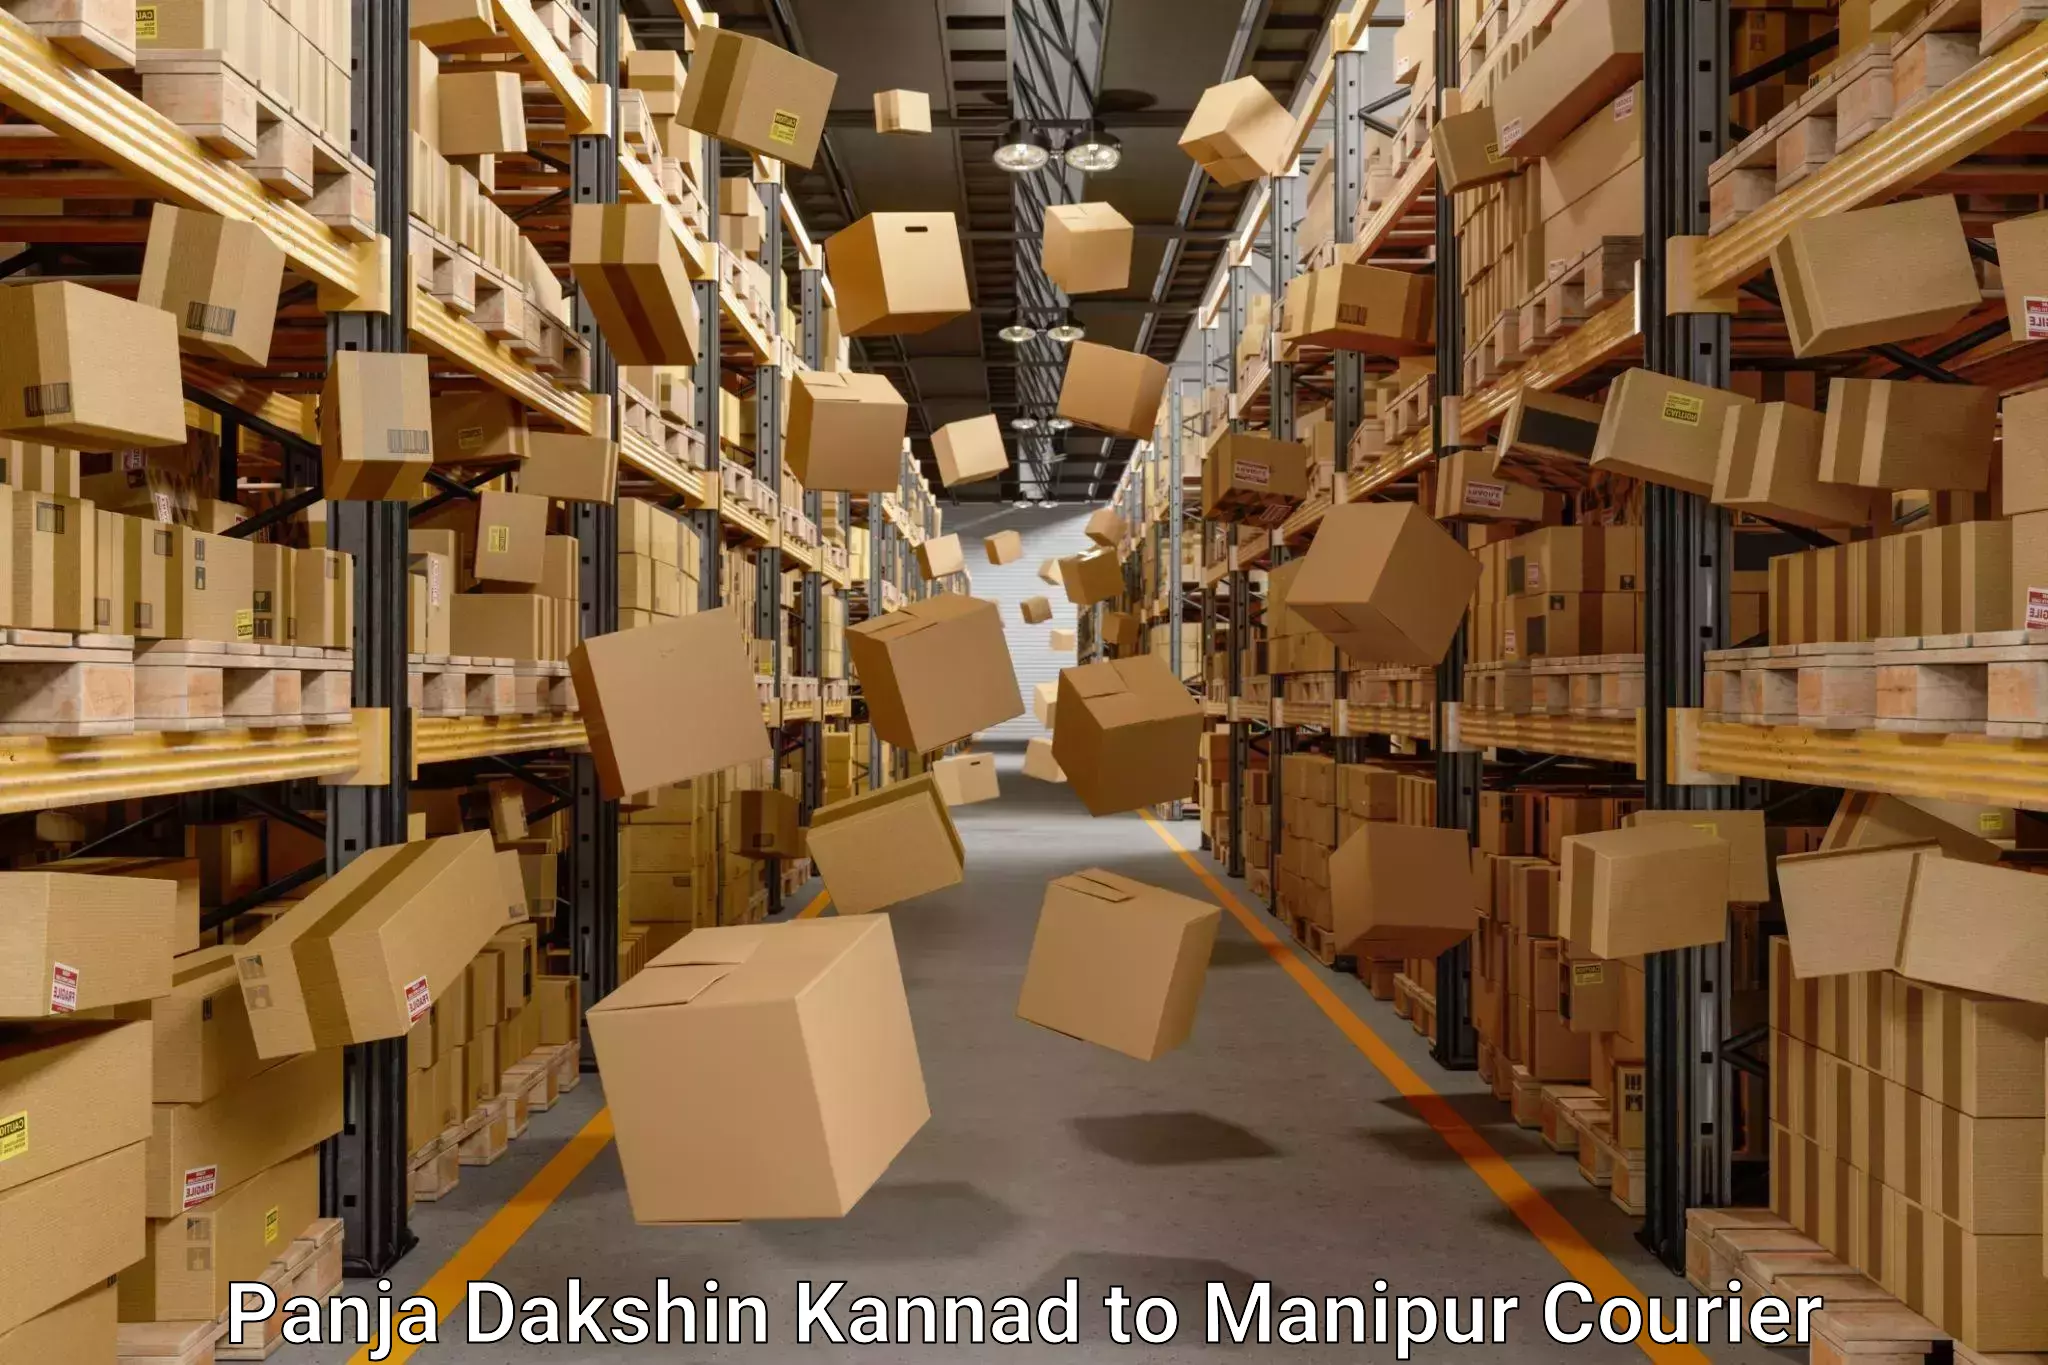 Furniture moving experts Panja Dakshin Kannad to Kanti